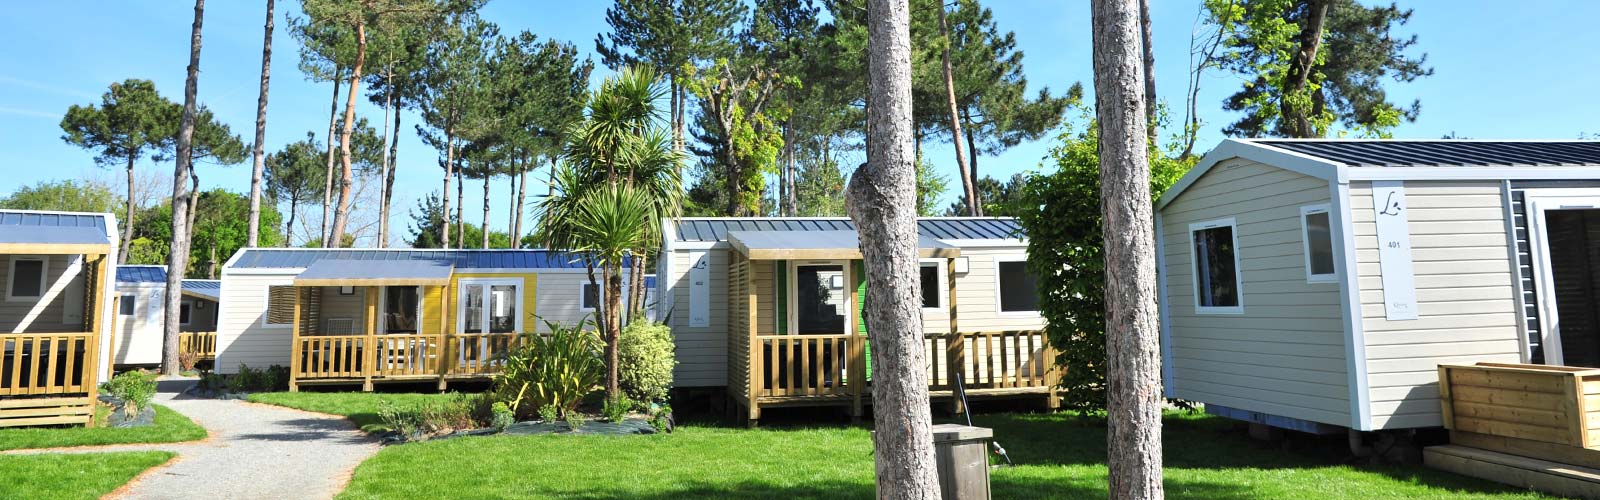 Des mobil-homes luxe et confort au camping Le Fief en Loire-Atlantique